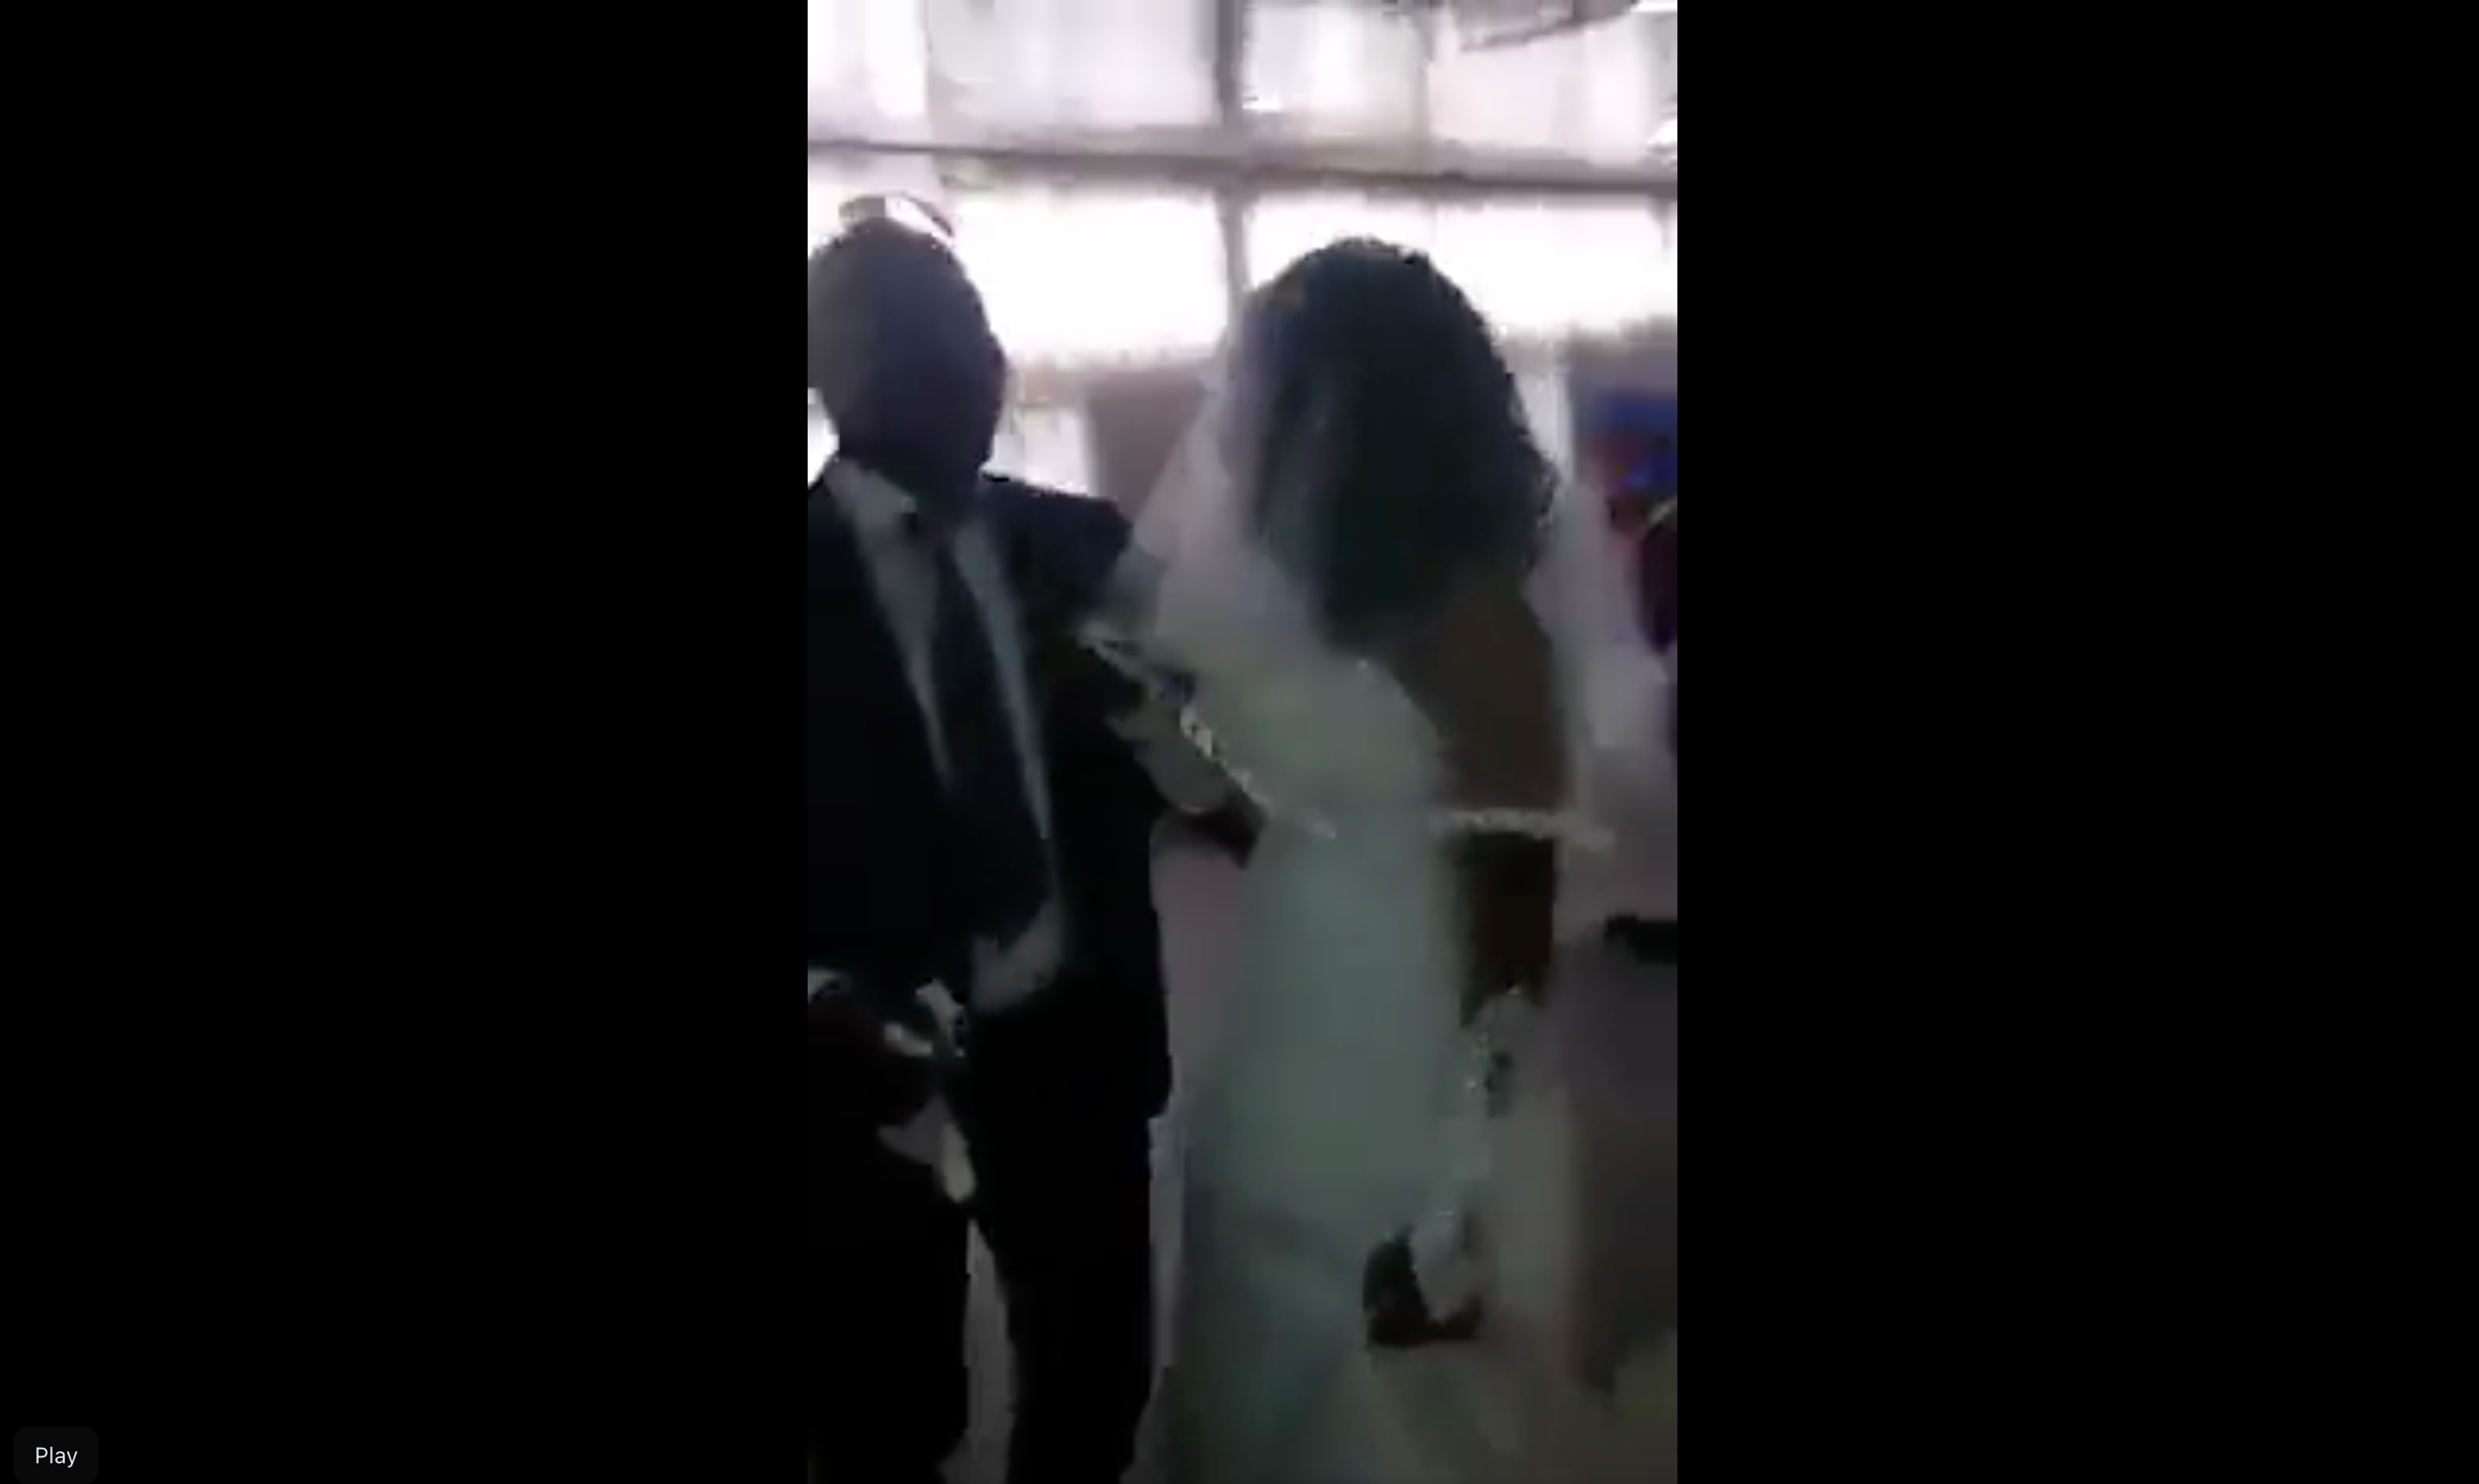 Der Eindringling streitet sich mit dem Bräutigam vor den Augen der Braut. | Quelle: Facebook.com/Maguqa